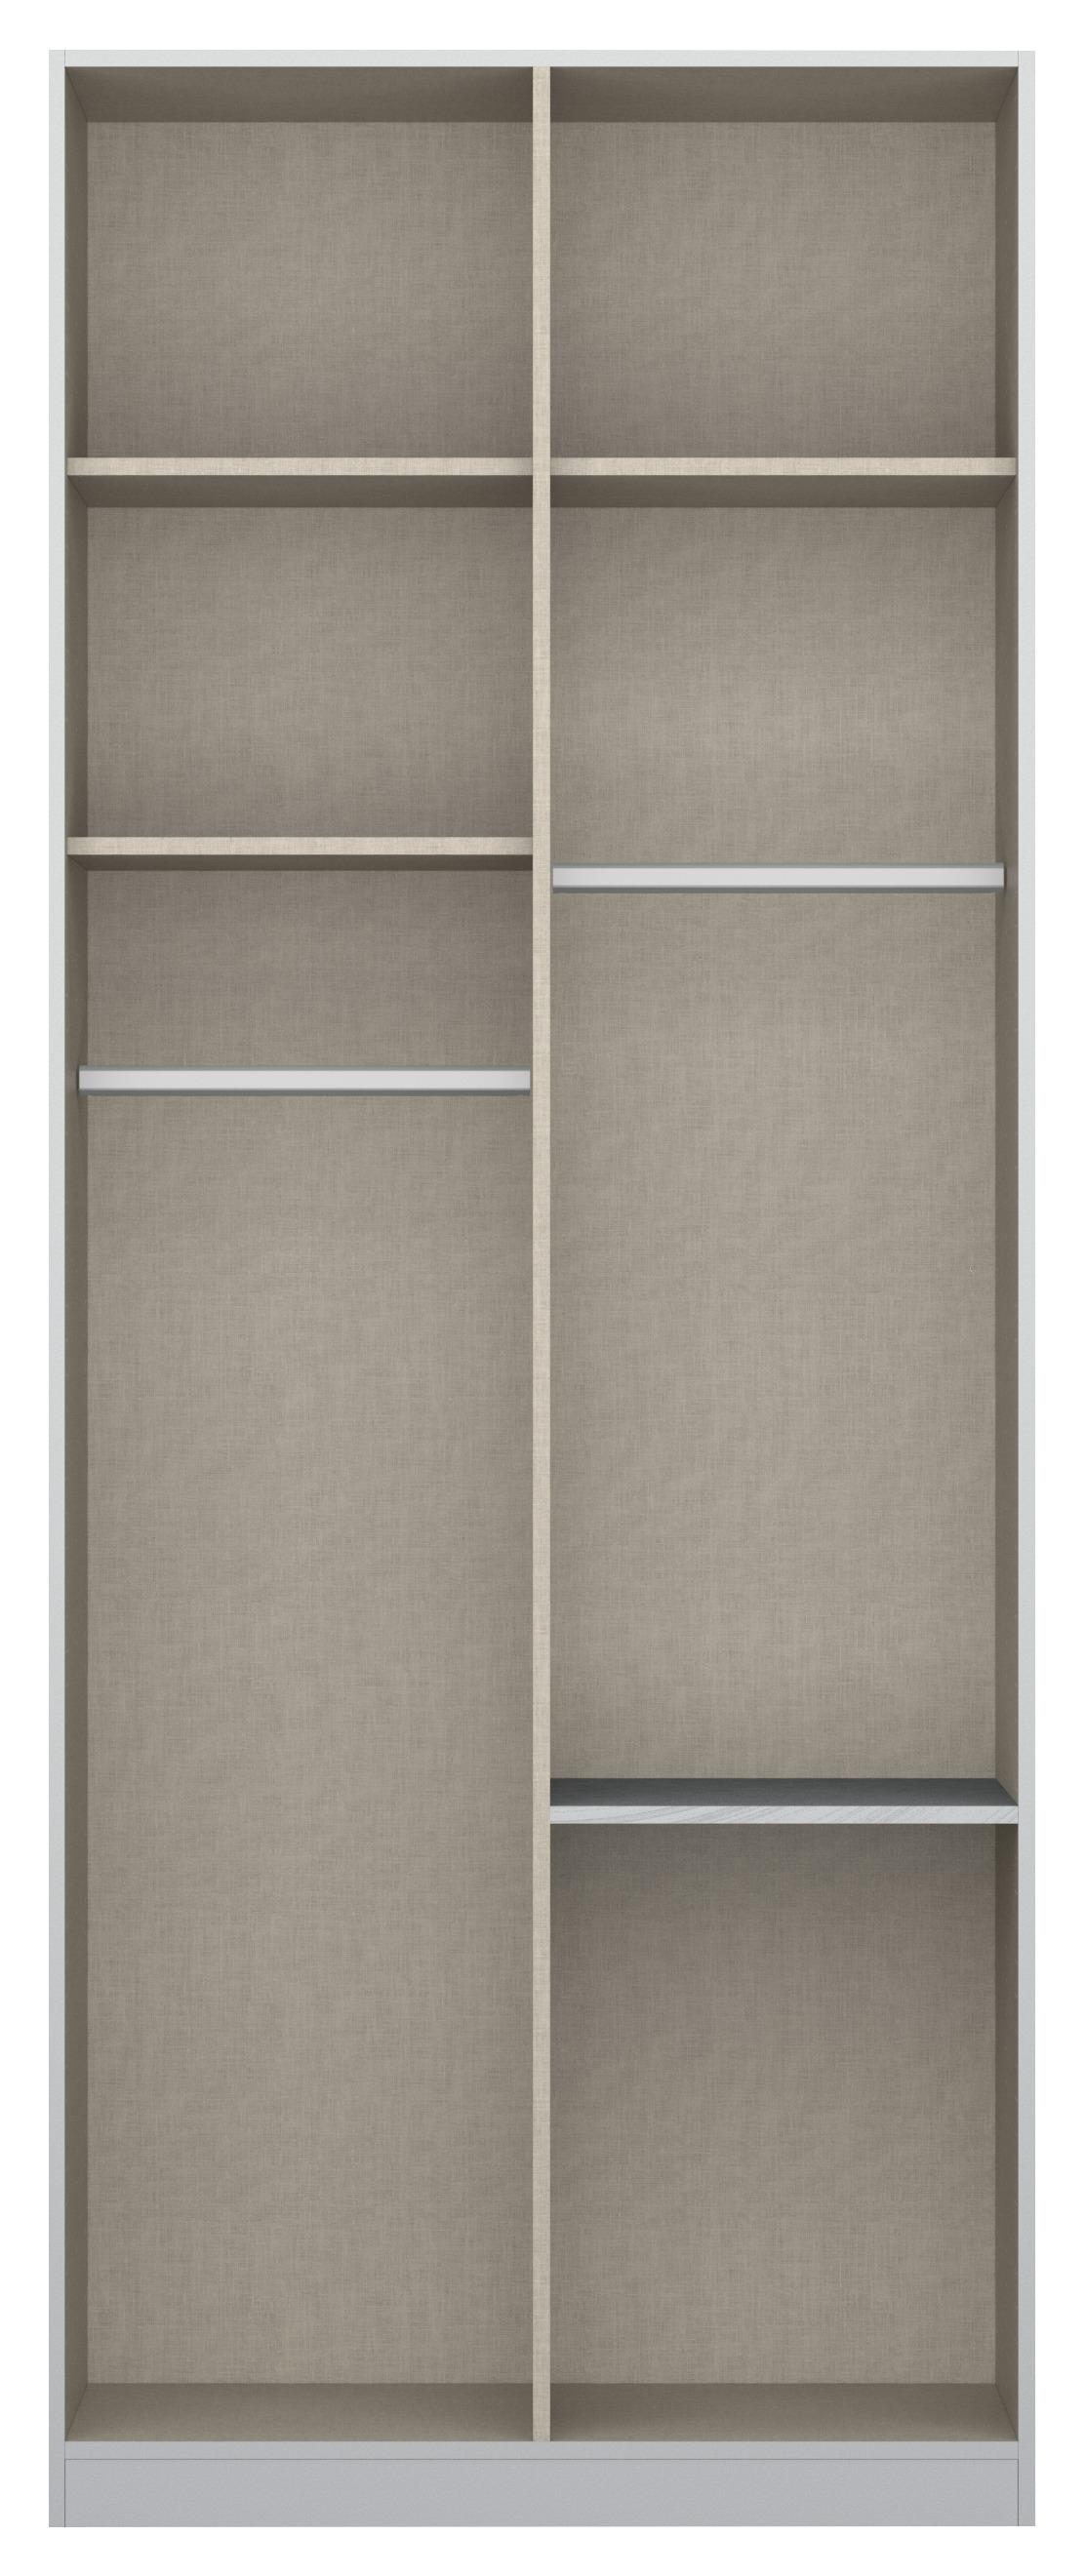 Skříň S Otočnými Dveřmi Alabama - světle šedá/barvy hliníku, Moderní, kompozitní dřevo (91/224/54cm)